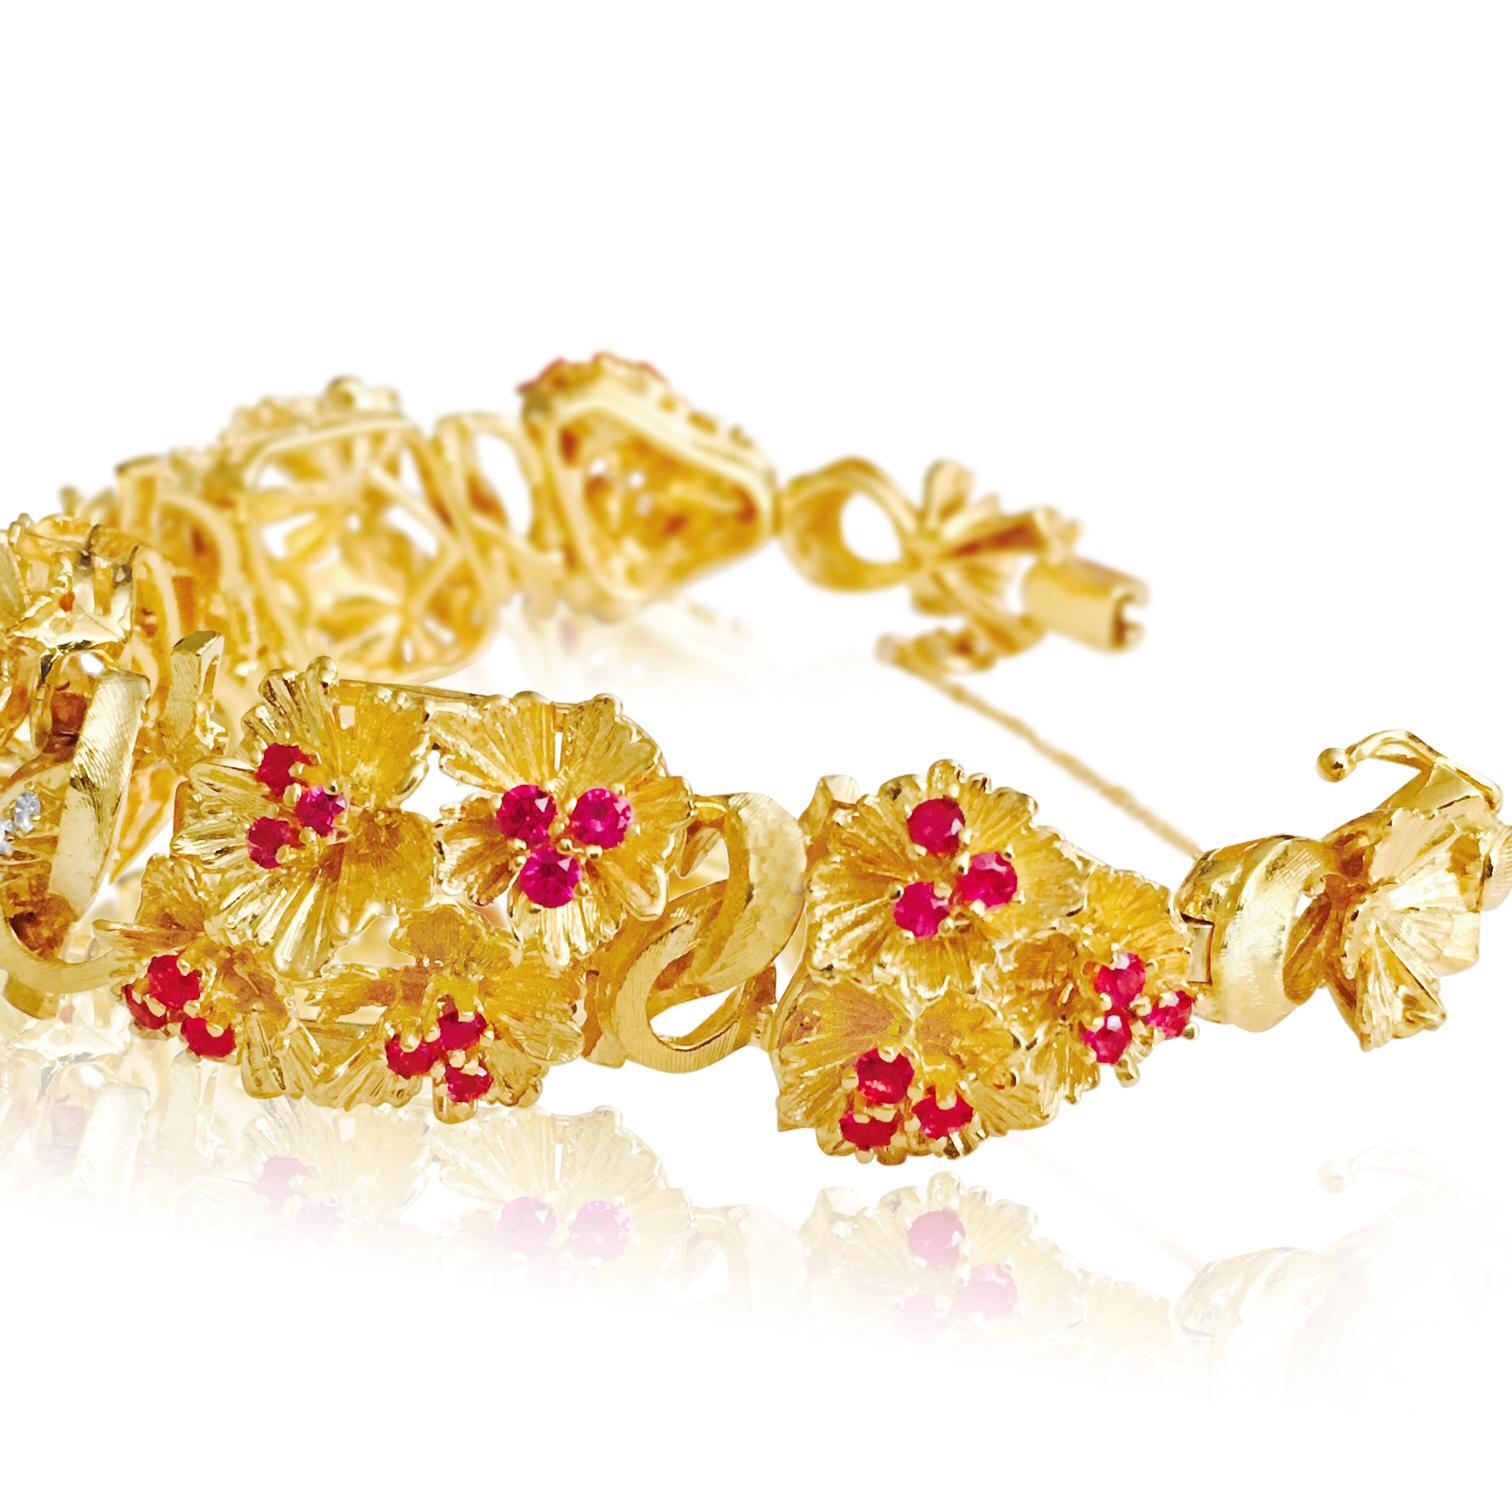 Façonnée avec soin dans de l'or jaune 18 carats, cette pièce vintage est ornée d'un magnifique rubis birman de 6,00 carats, dont la taille ronde présente une saturation et une couleur rouge intense. Il est accompagné de diamants de 1,00 carat de